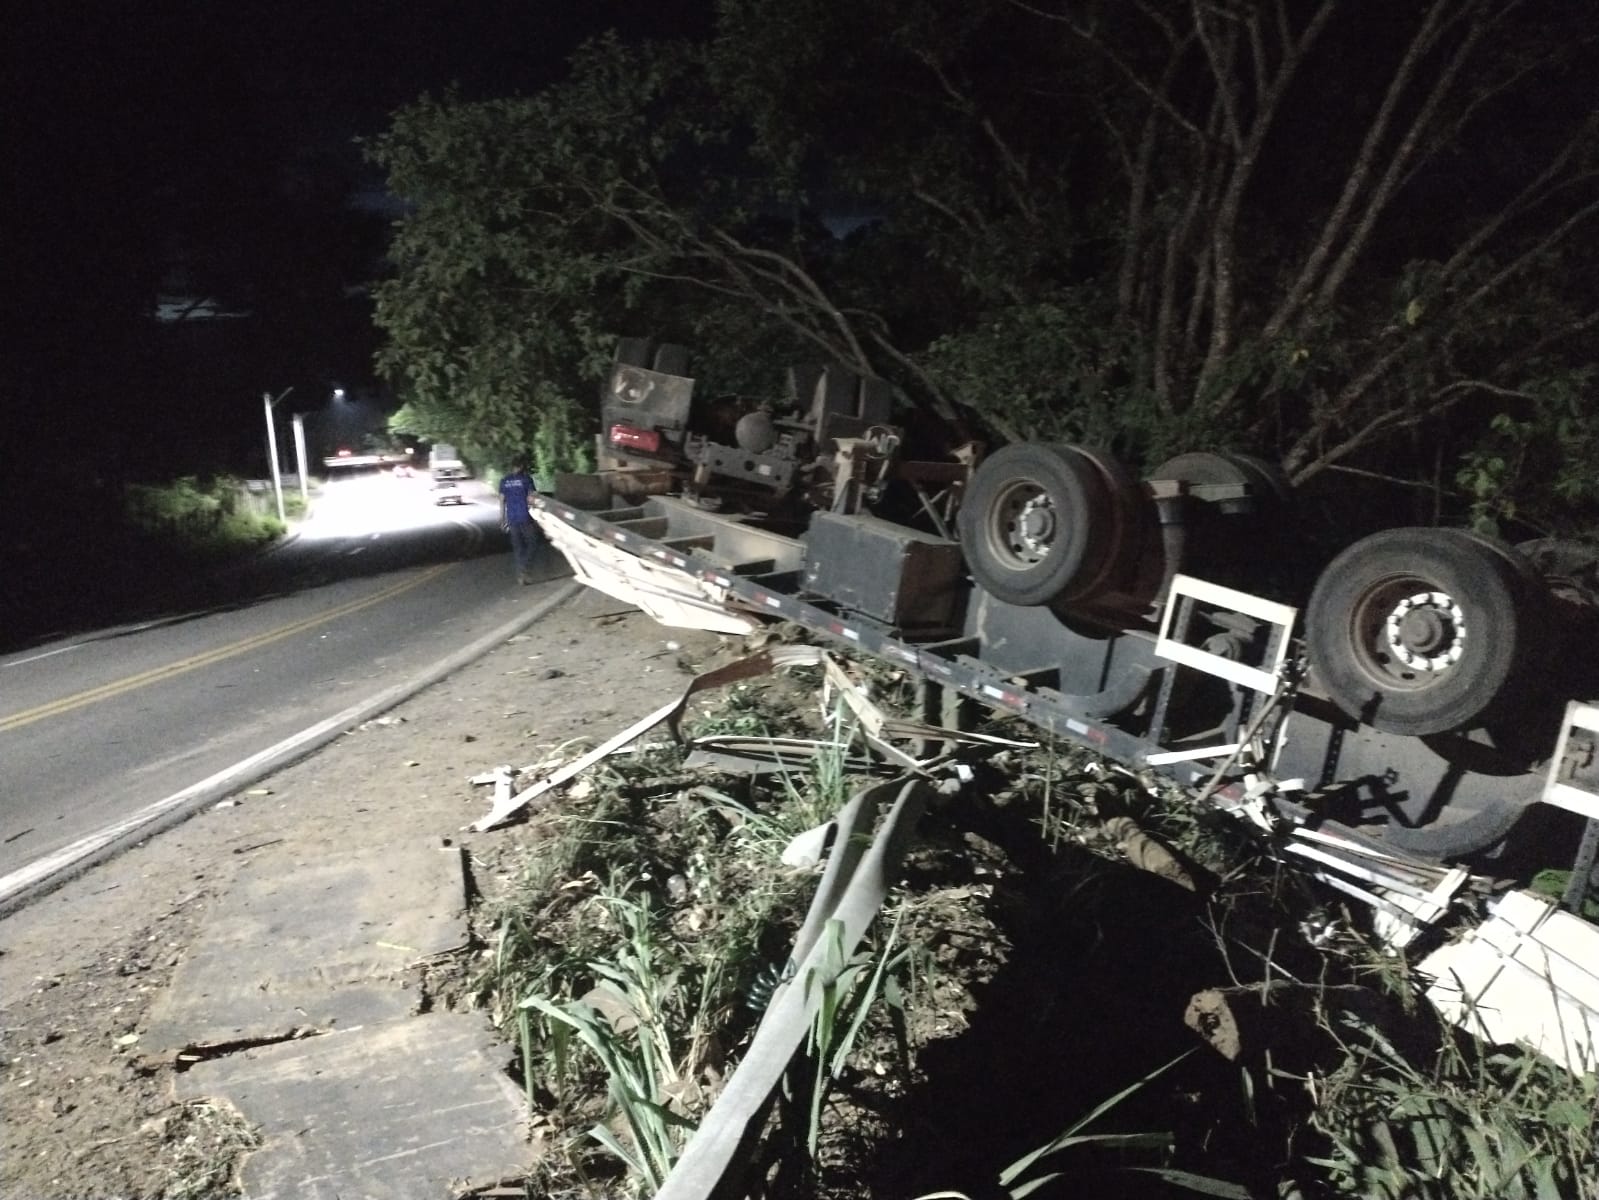 Veículo saiu da pista na região conhecida como Curva da Pedreira, onde há ocorrências de trânsito; acidente ocorreu na noite de terça-feira (5)